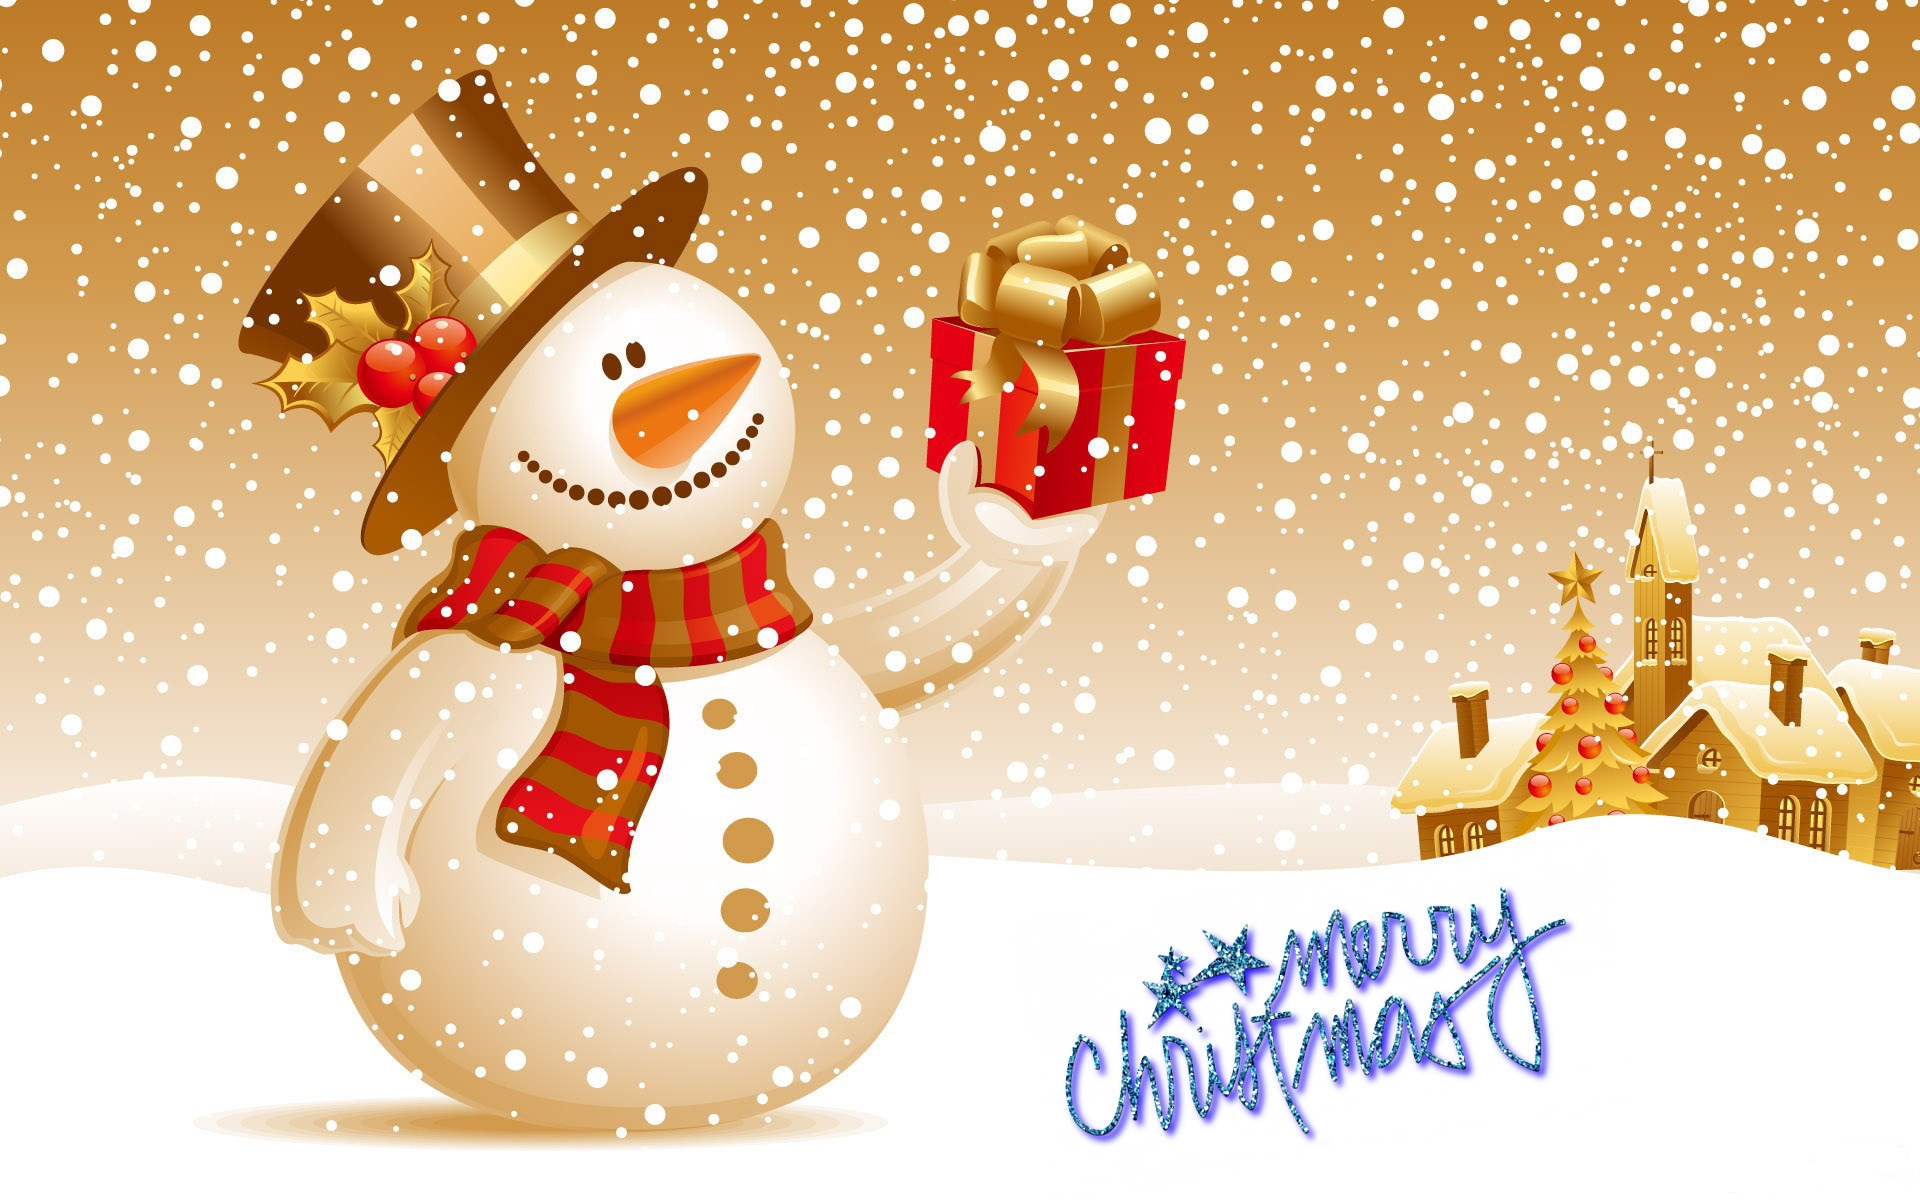 メリークリスマスの壁紙,雪だるま,クリスマス・イブ,冬,グリーティングカード,クリスマス